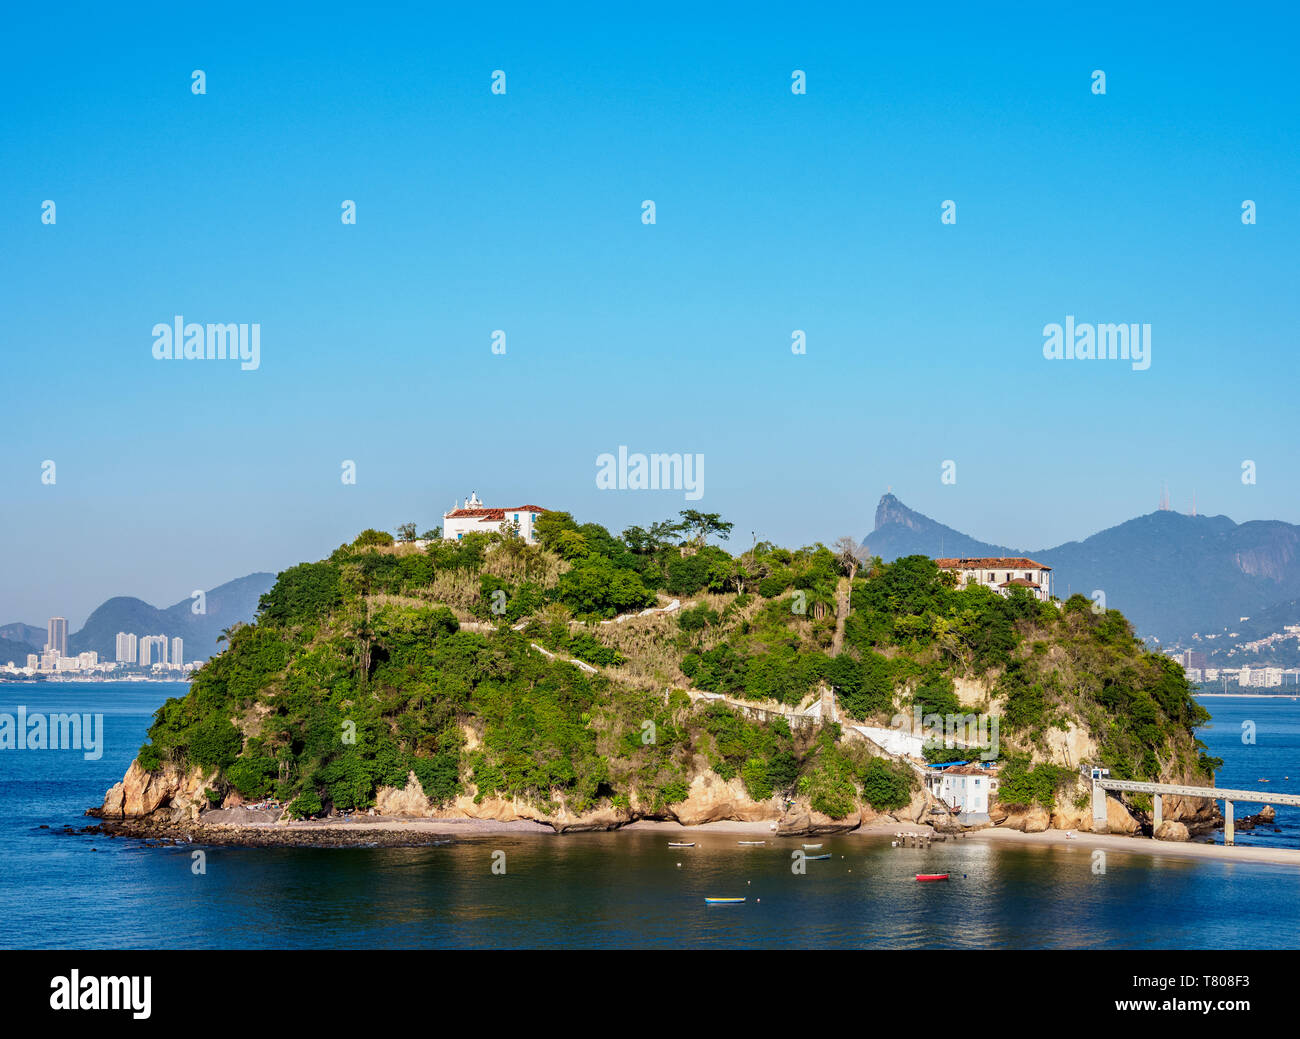 Boa Viagem Island, Niteroi, State of Rio de Janeiro, Brazil, South America Stock Photo